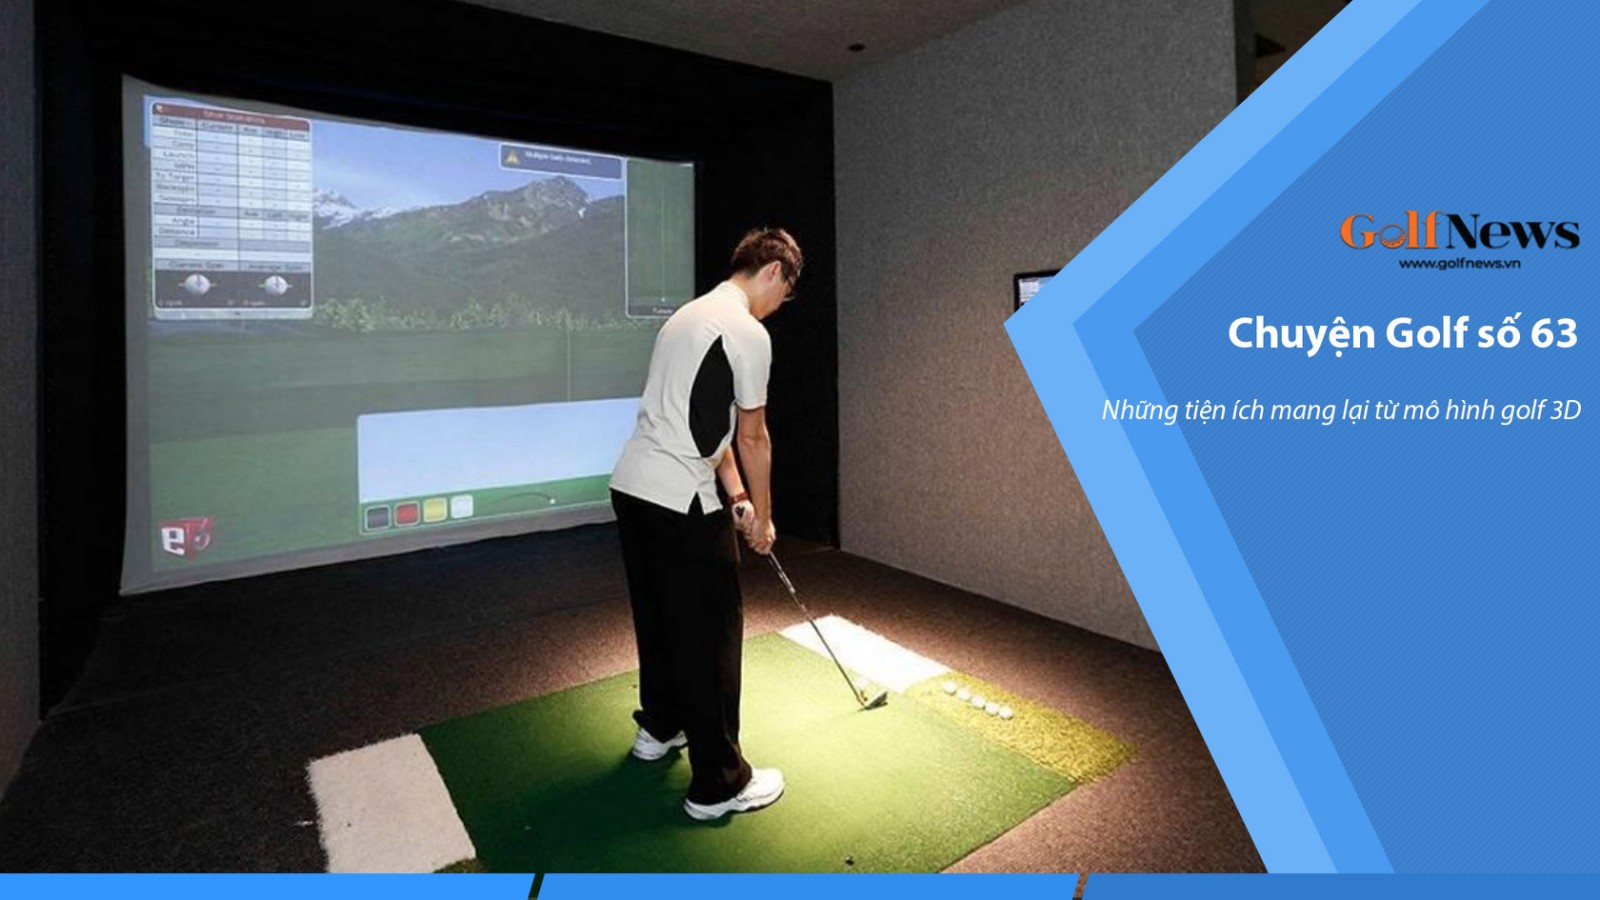 Chuyện golf số 63: Những tiện ích mang lại từ mô hình golf 3D